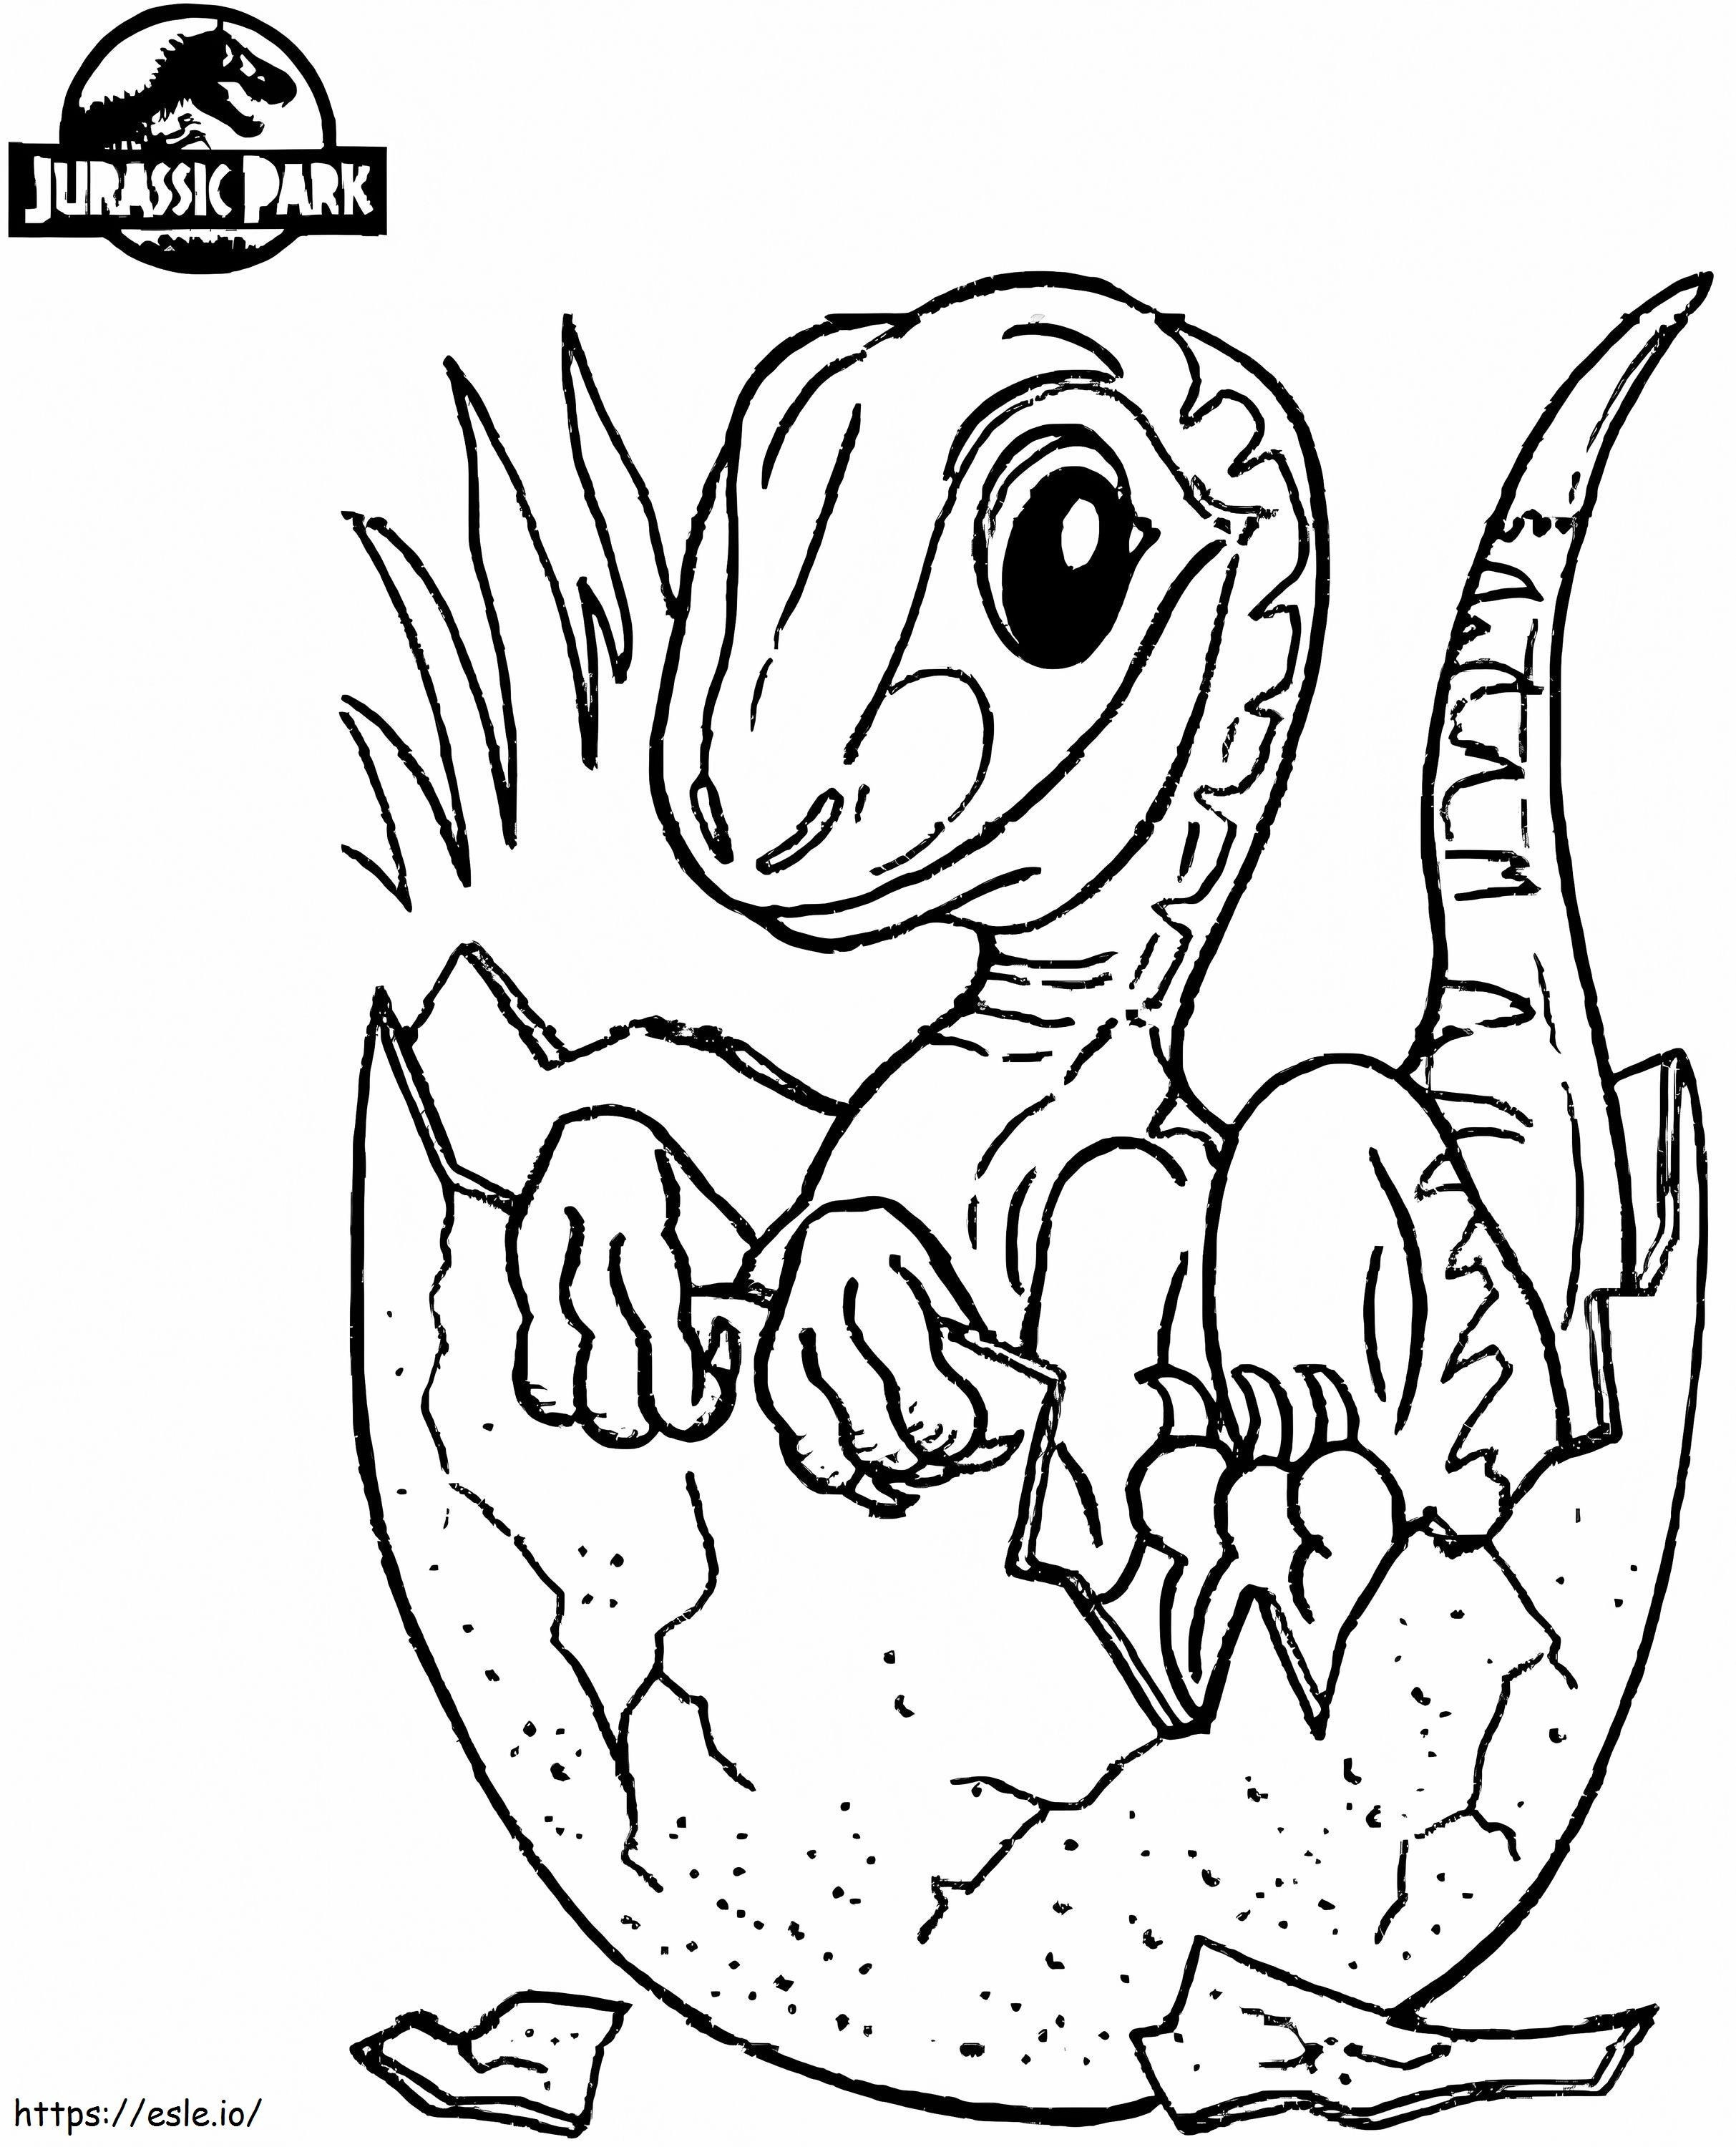 Bebê dinossauro no mundo jurássico para colorir